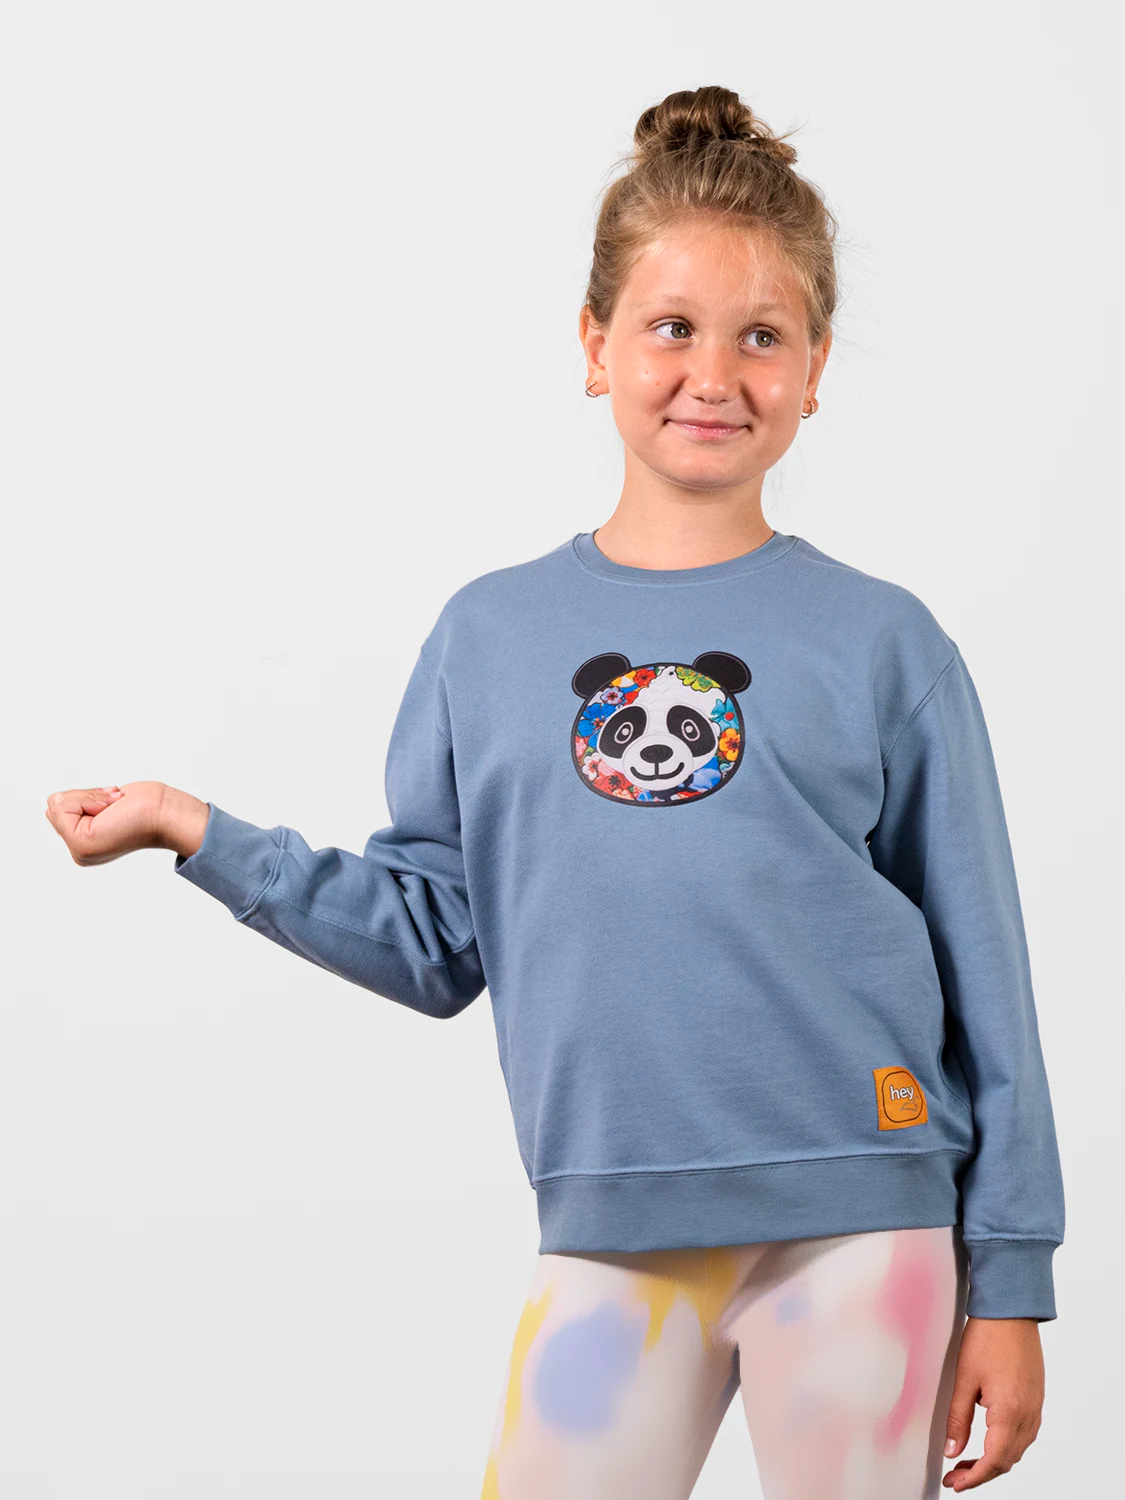 Superflat Panda Art Blue Sweatshirt